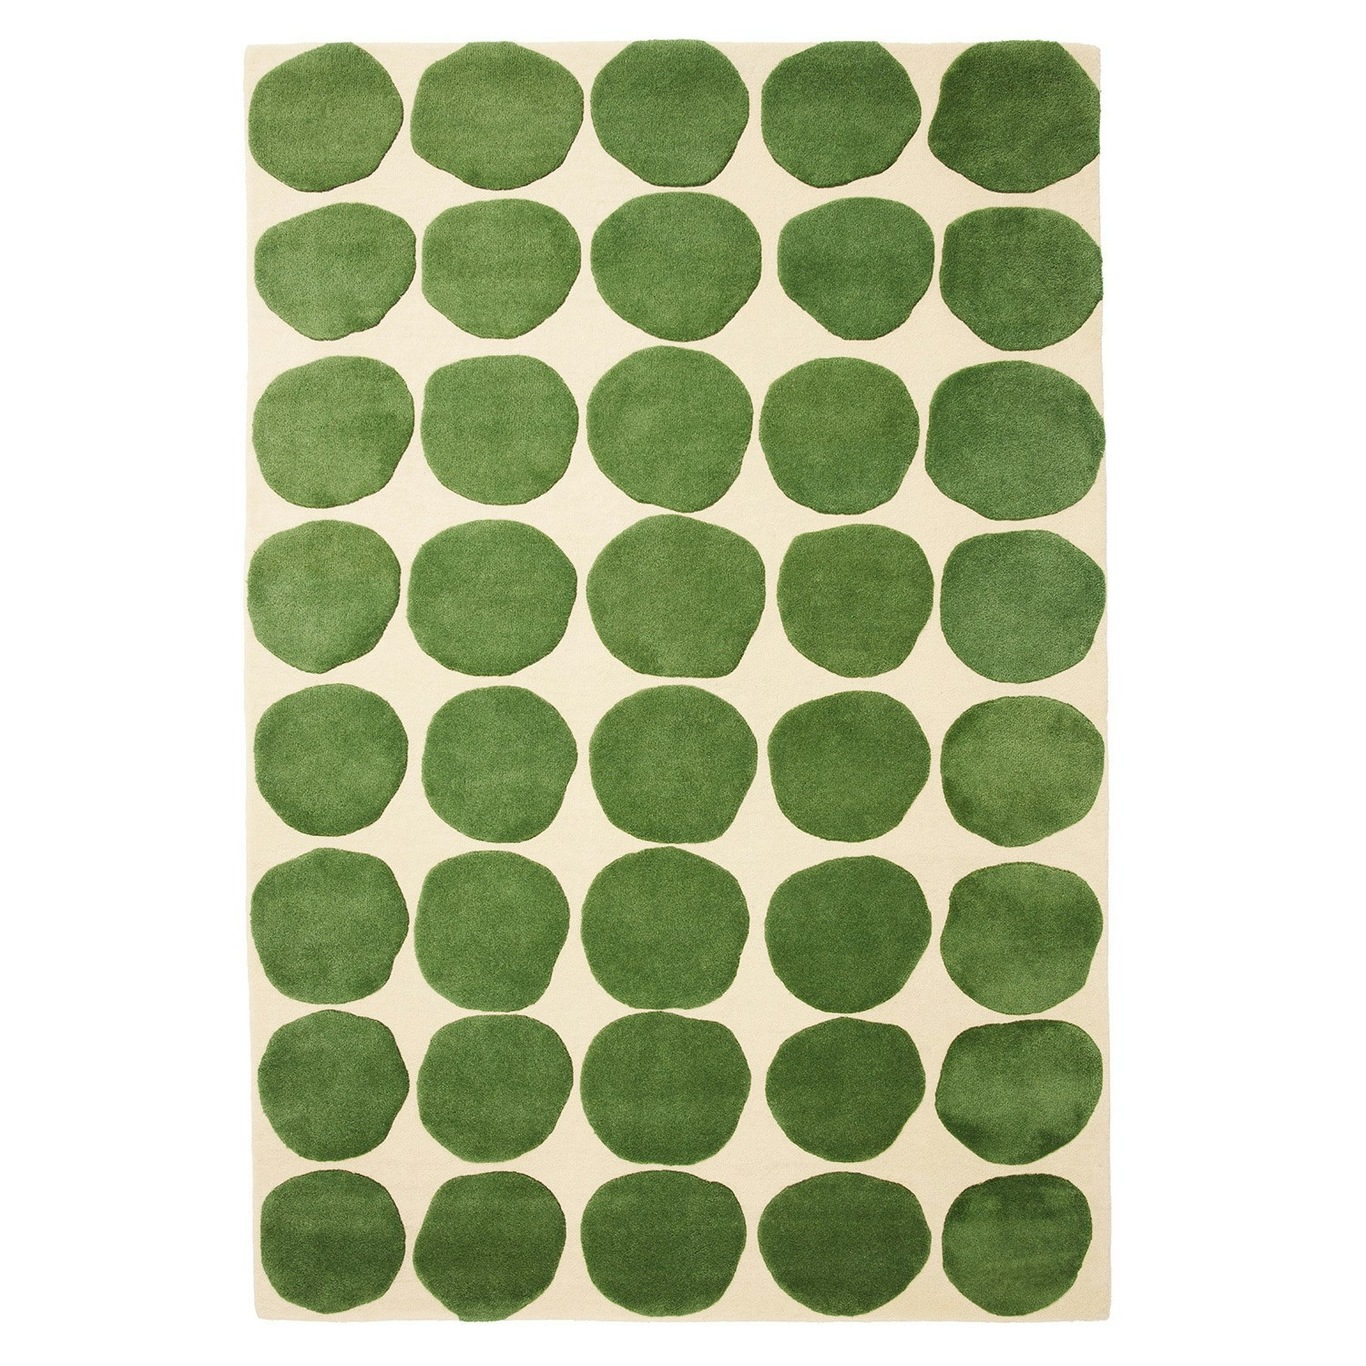 Dots 2 Level Tæppe Light Khaki / Cactus Green, 230x320_cm cm